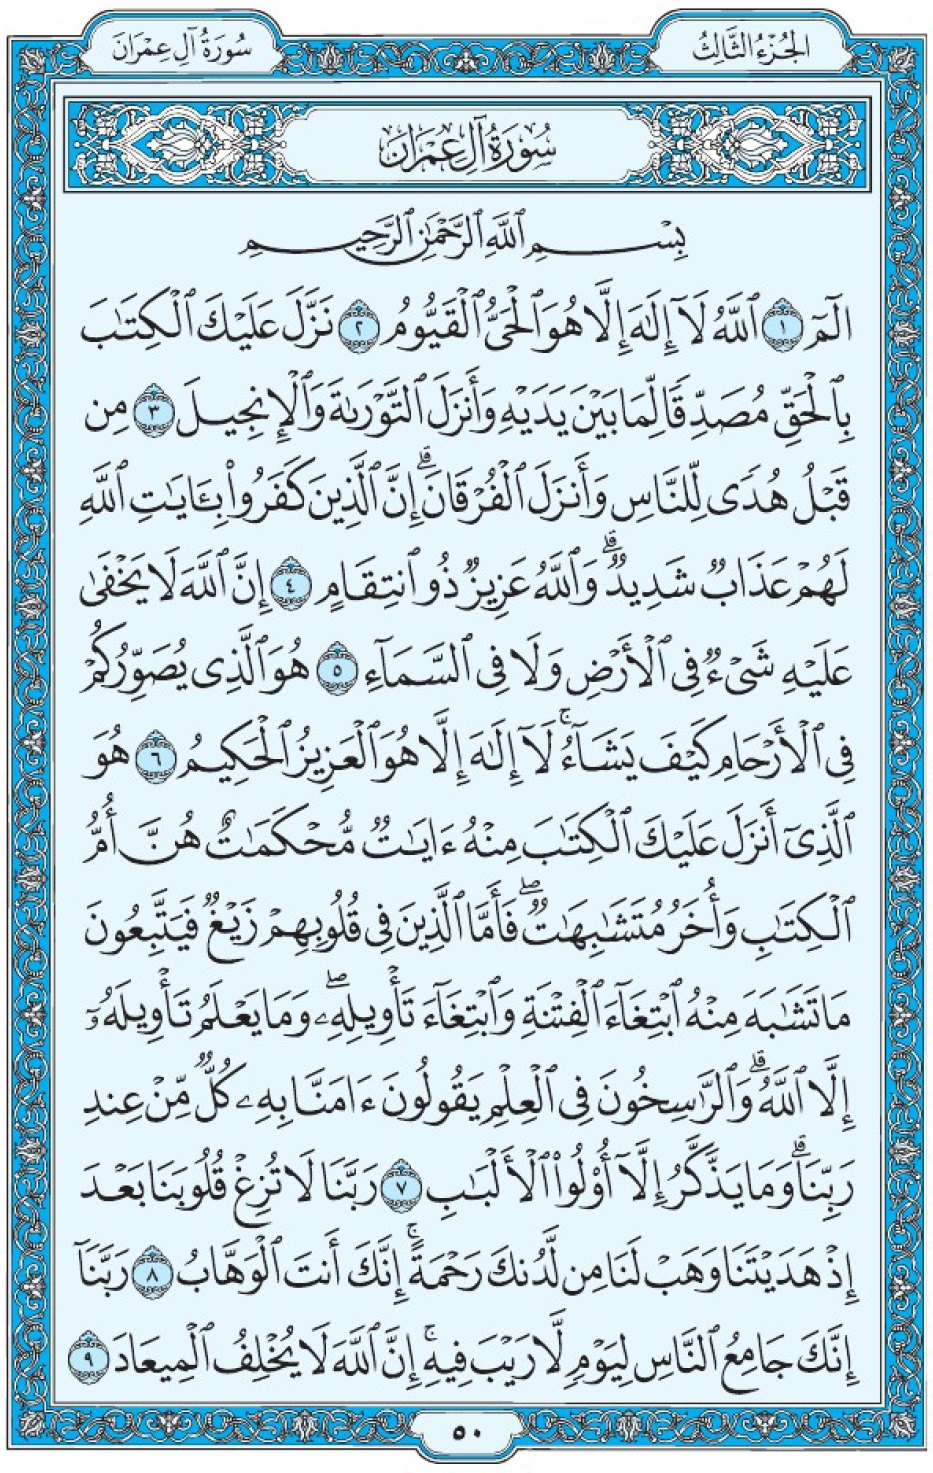 Коран Мединский мусхаф страница 50, сура 3 Али Имран سورة ٣ آل عمران 